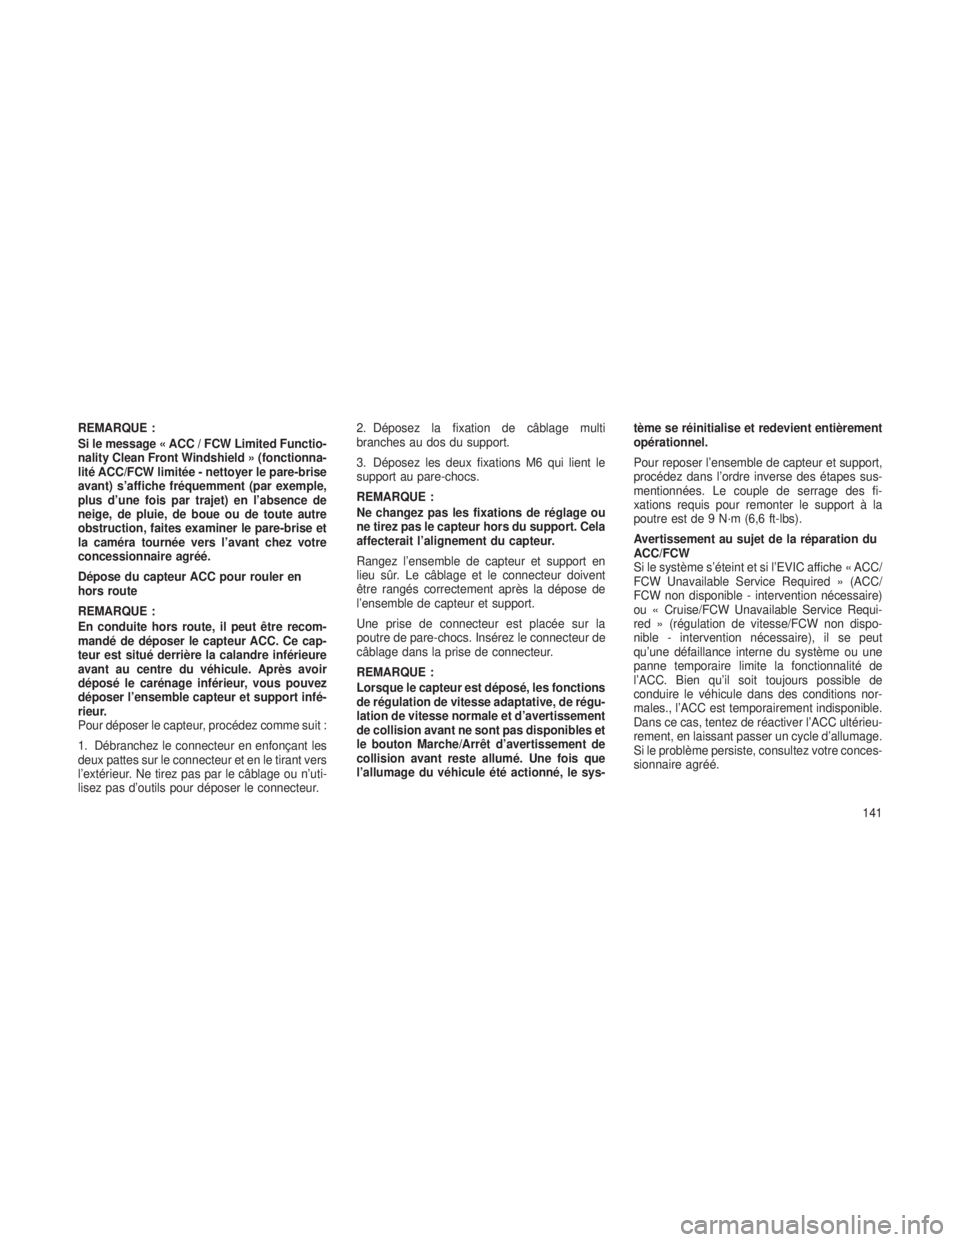 JEEP GRAND CHEROKEE 2013  Notice dentretien (in French) REMARQUE :
Si le message « ACC / FCW Limited Functio-
nality Clean Front Windshield » (fonctionna-
lité ACC/FCW limitée - nettoyer le pare-brise
avant) s’affiche fréquemment (par exemple,
plus 